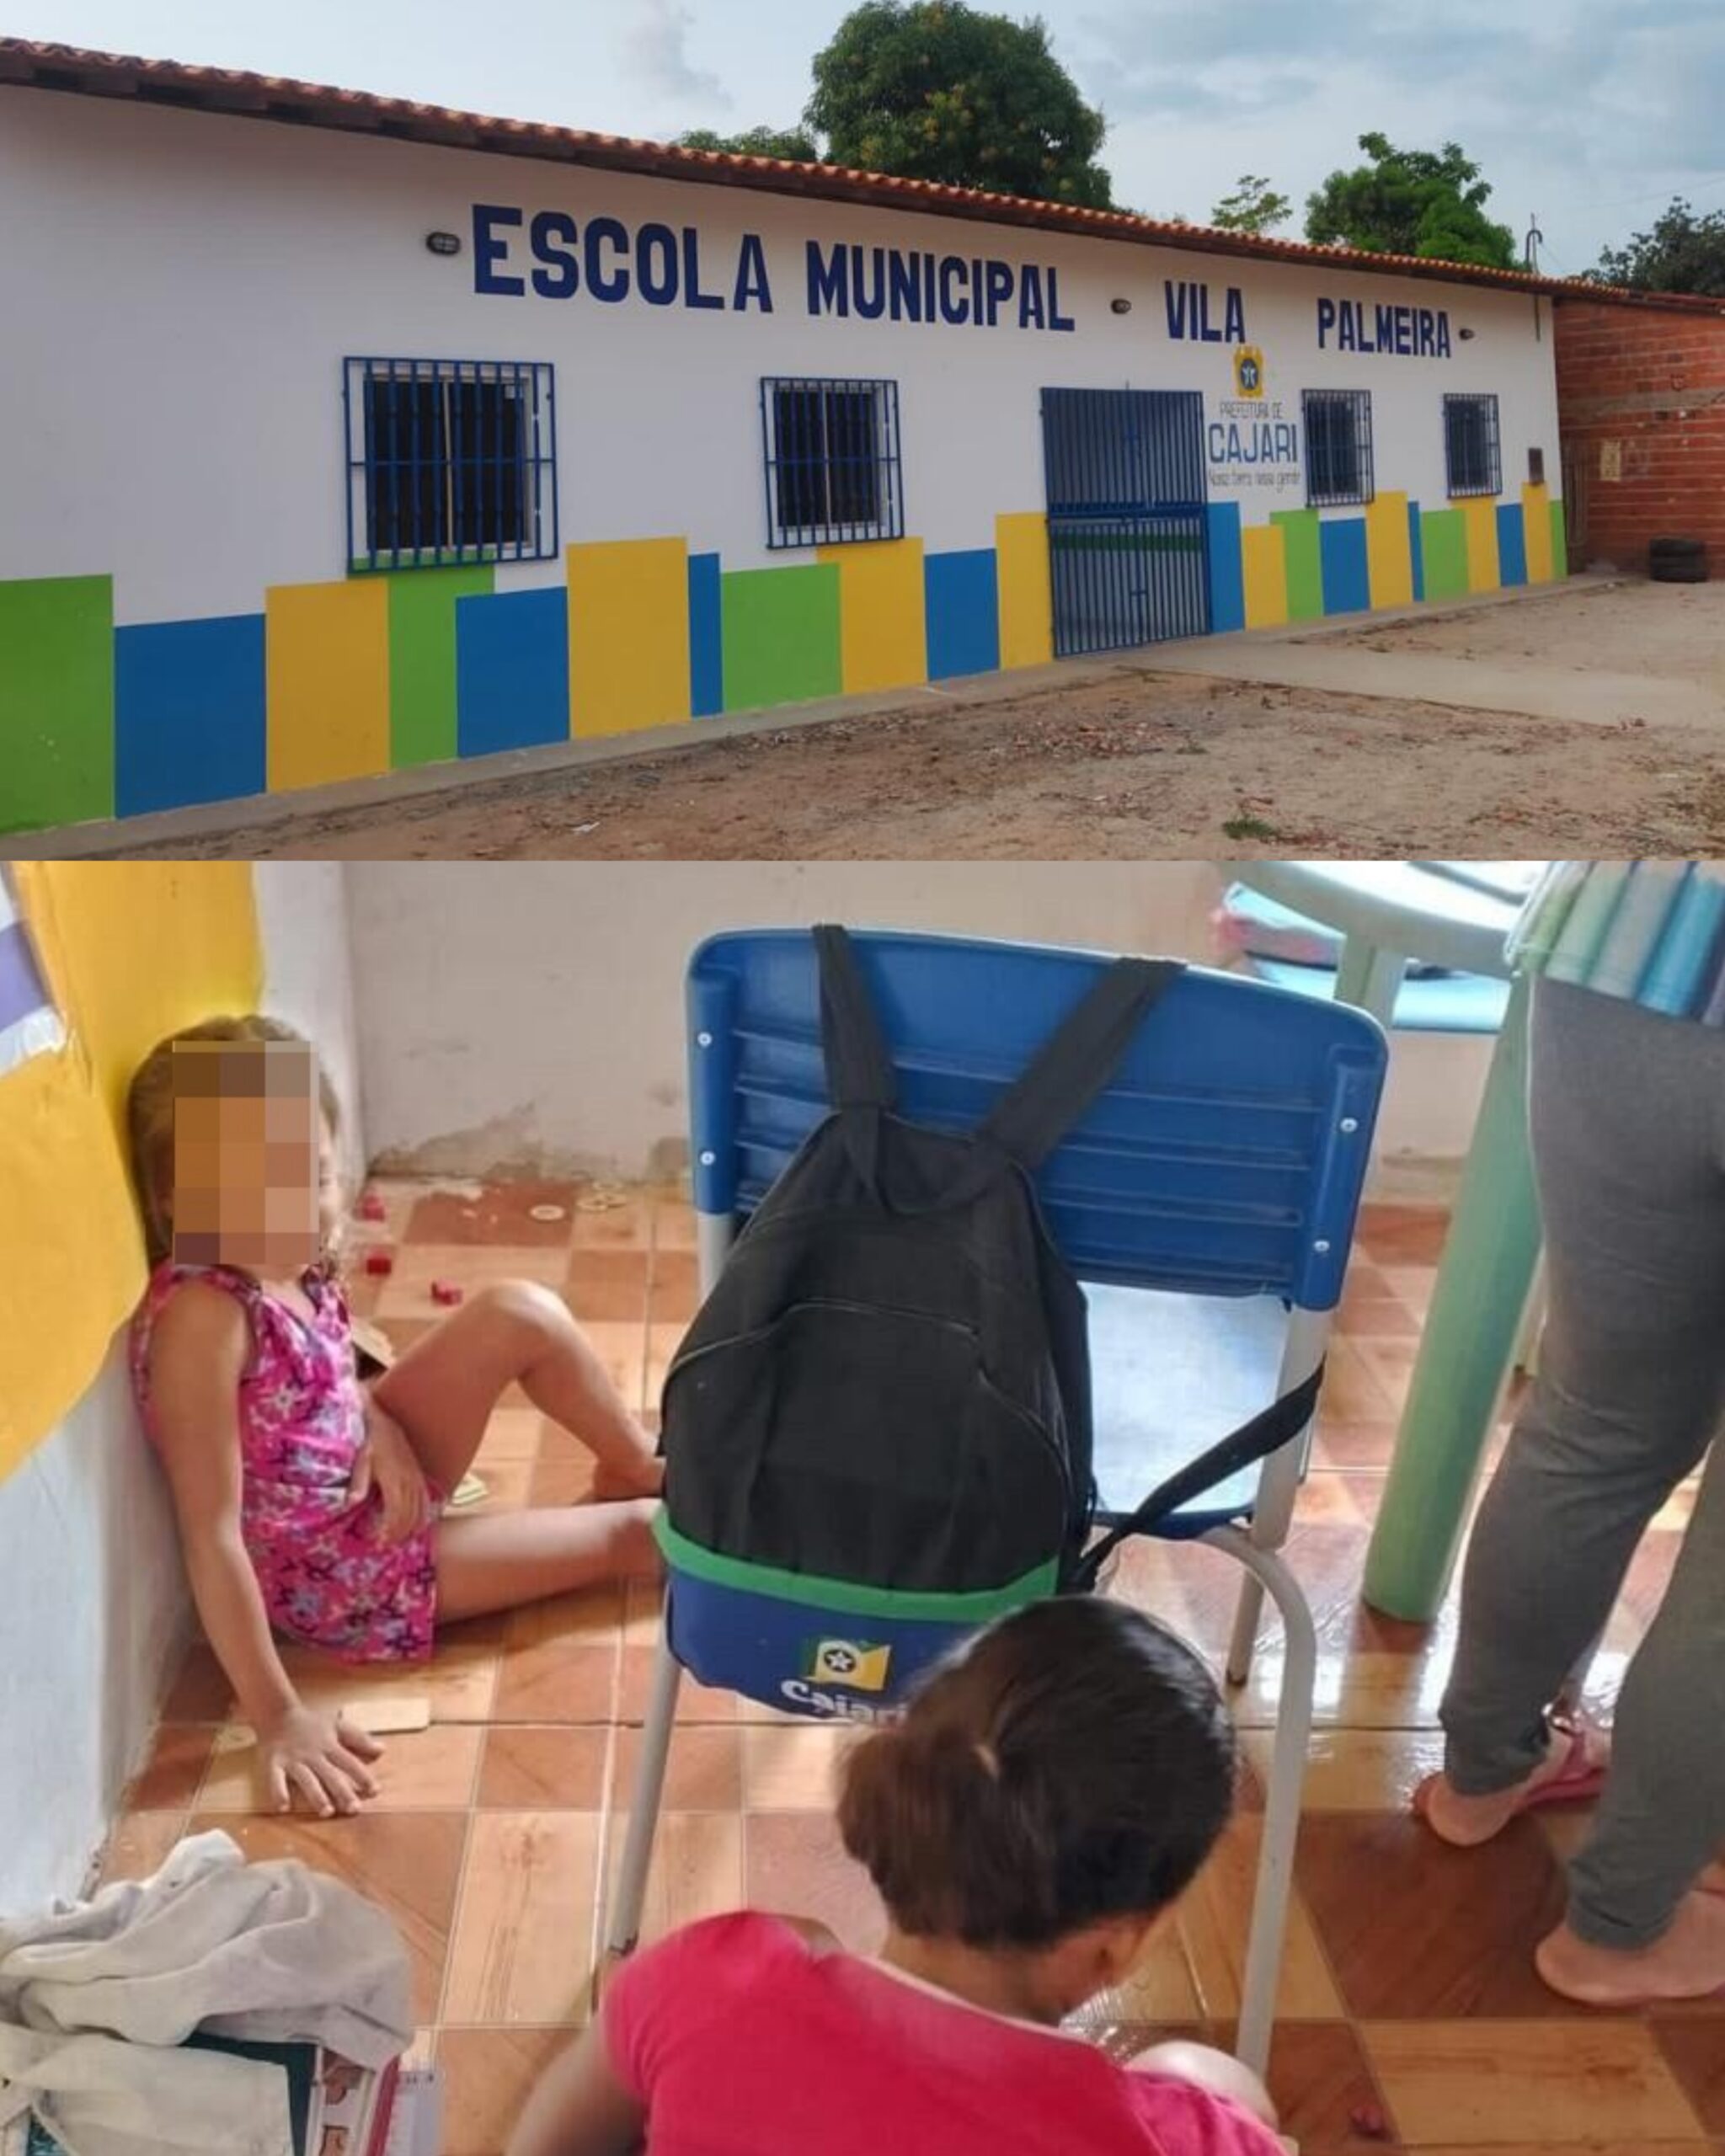 Mesmo com a escola pronta, crianças de Cajari têm aula em salas improvisadas e sem bebedouro